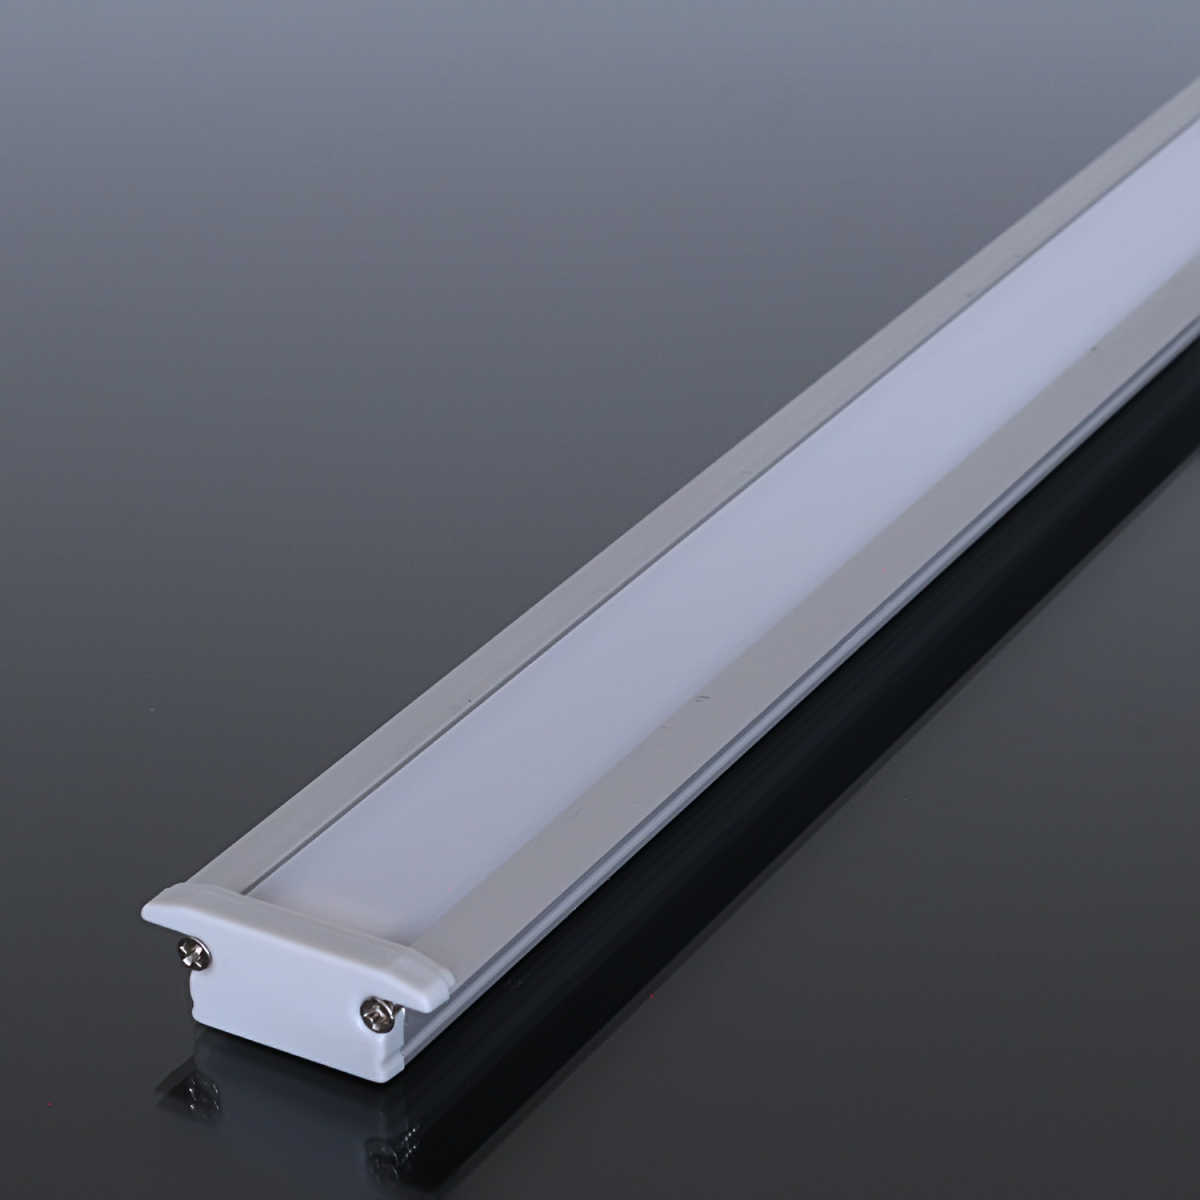 super helle XQ LED-Leiste warmweiß 2700K, 450 lm, vielseitig einsetzbar,  homogen, formschöne Aufbauleiste, Küchenbeleuchtung